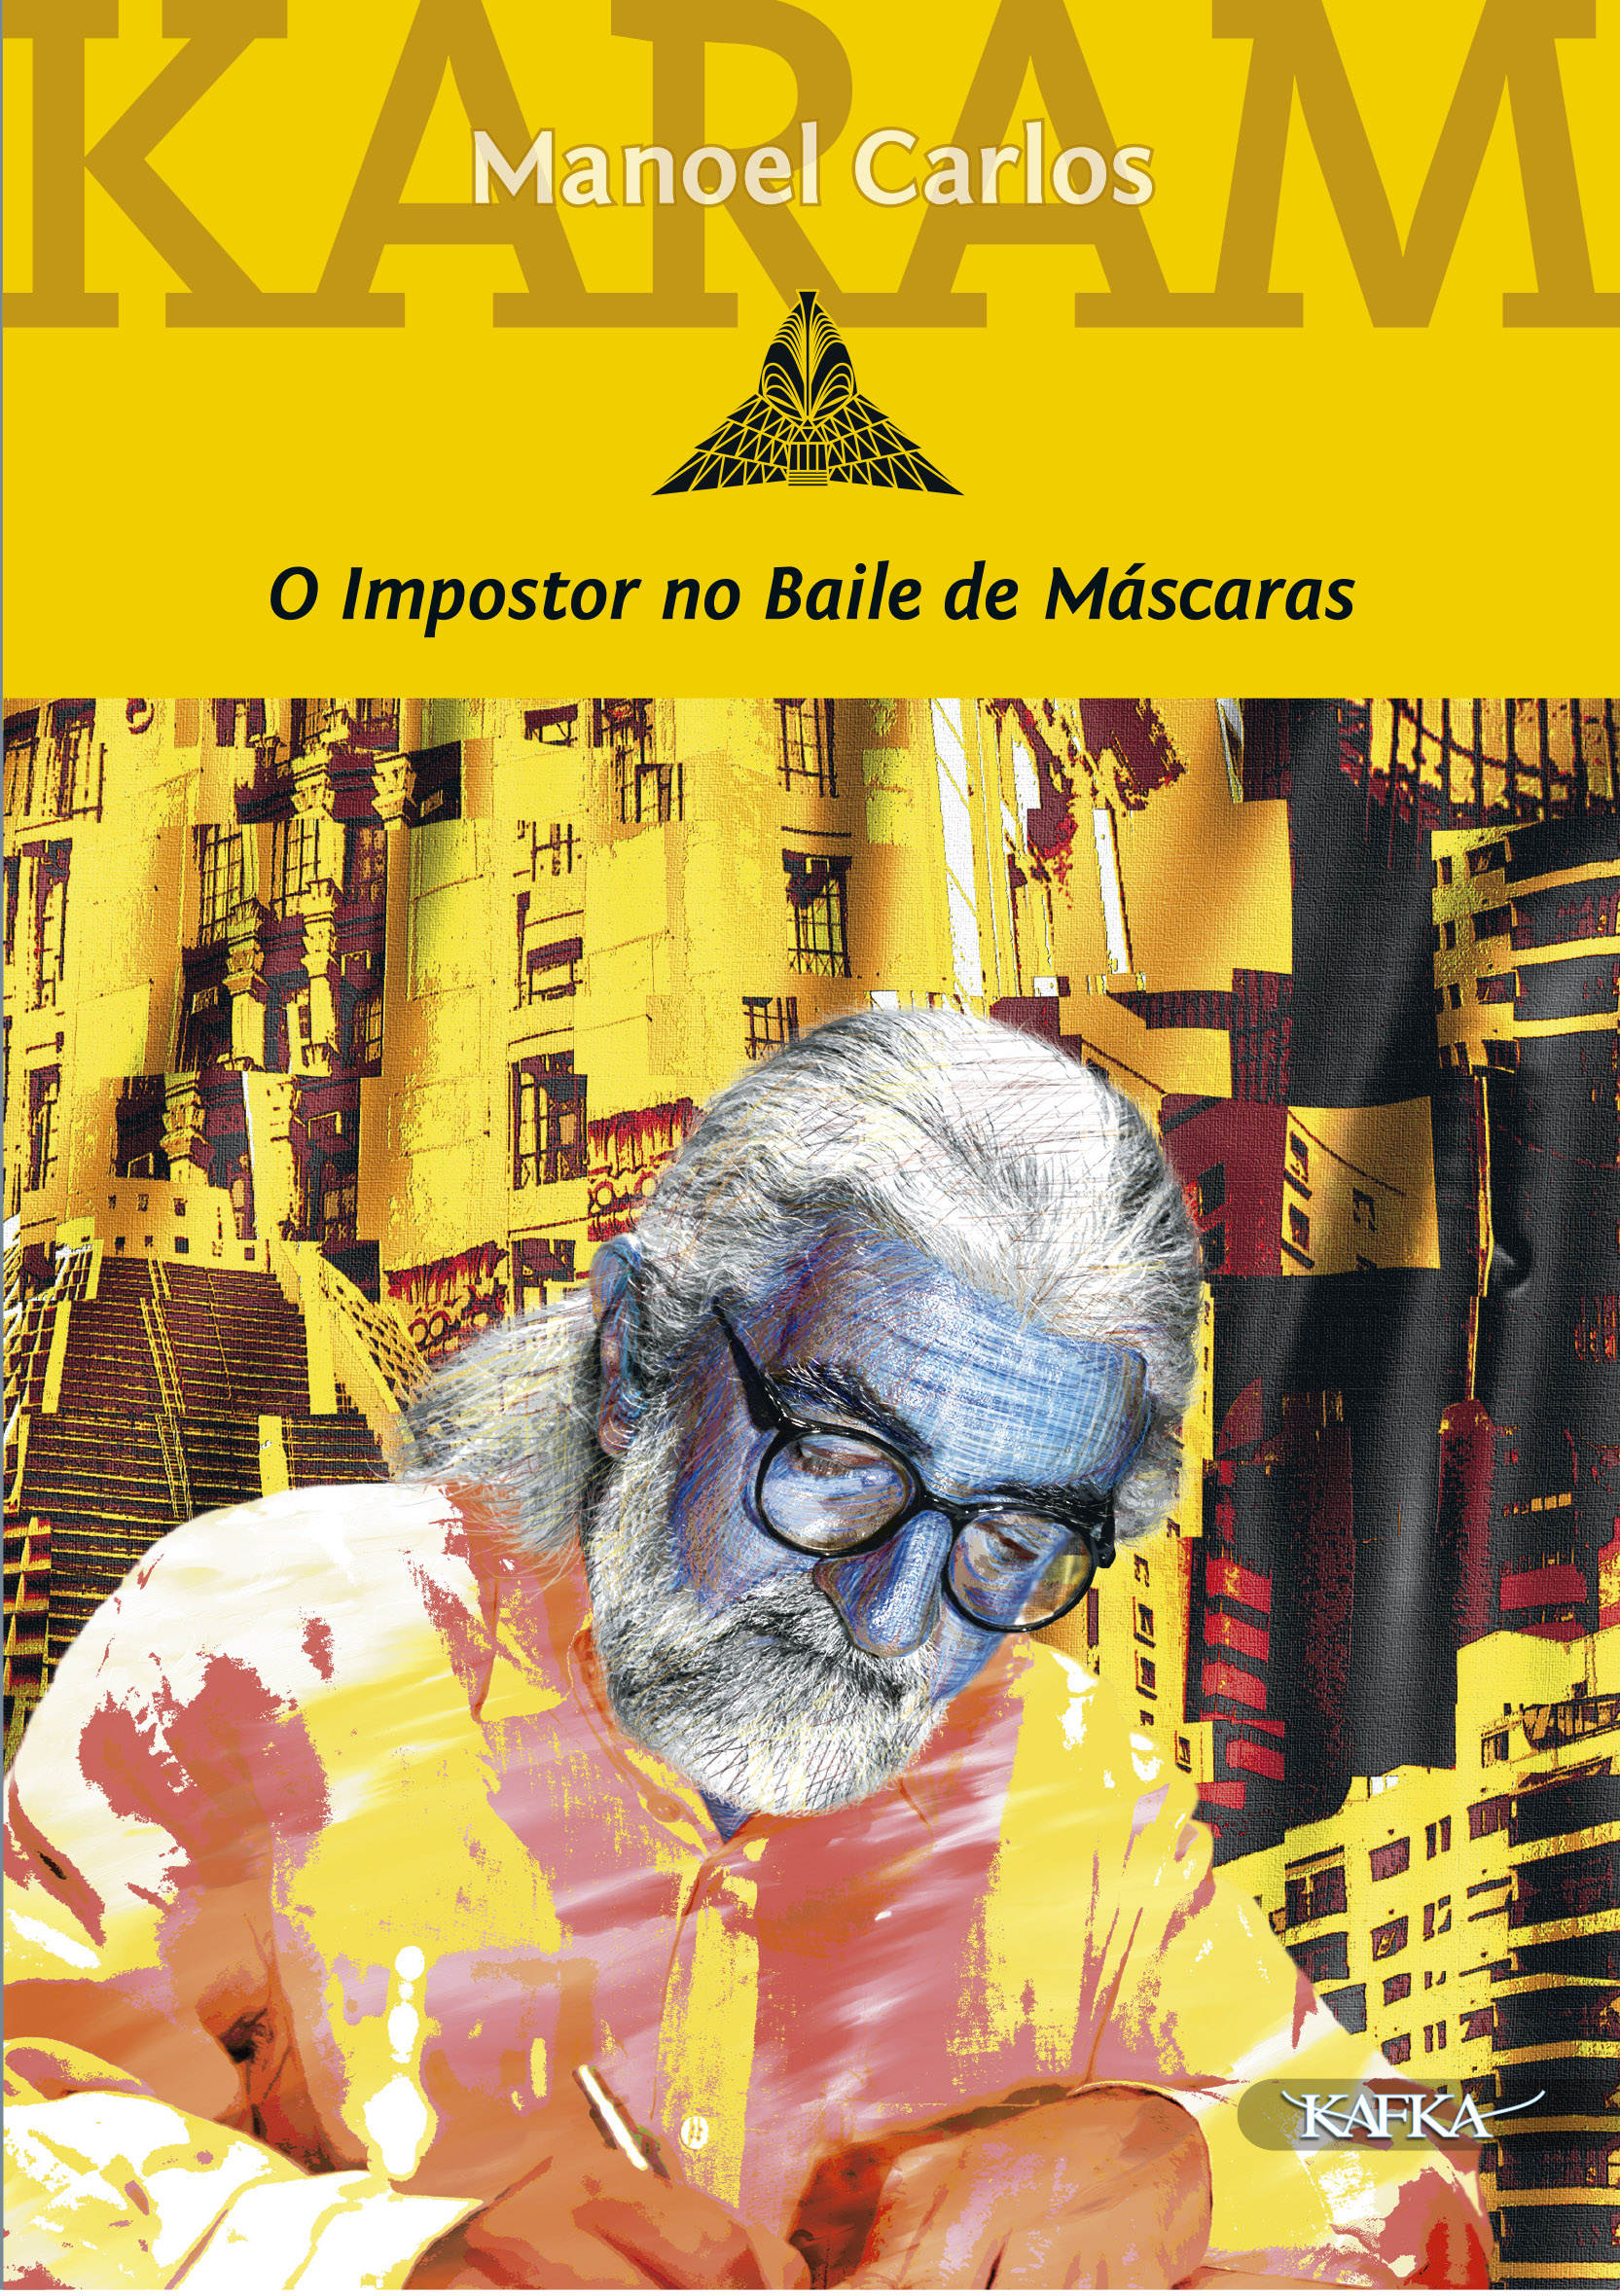  O Baile de Máscaras (Portuguese Edition